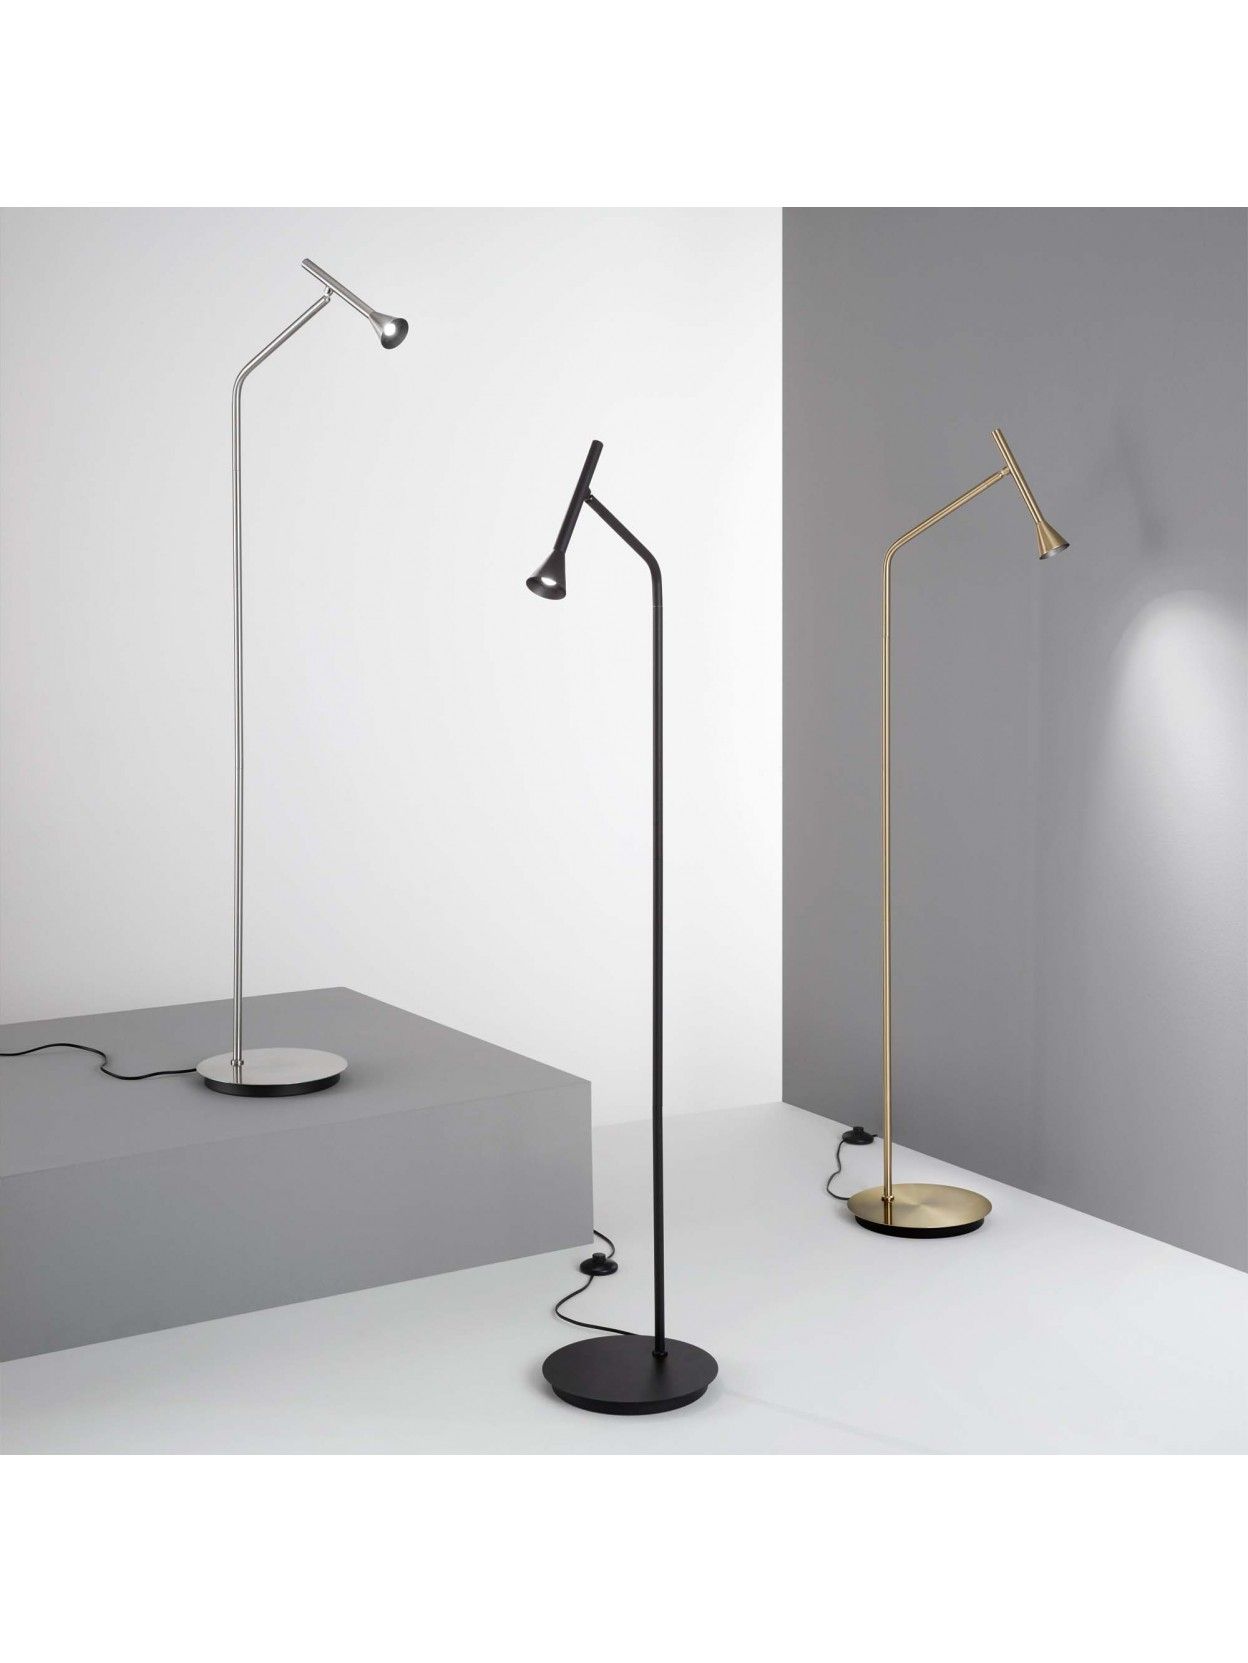 Modern Design Black Led Floor Lamp With 1 Light For Living Room Dl1688 In Black Floor Lamps (Photo 8 of 15)